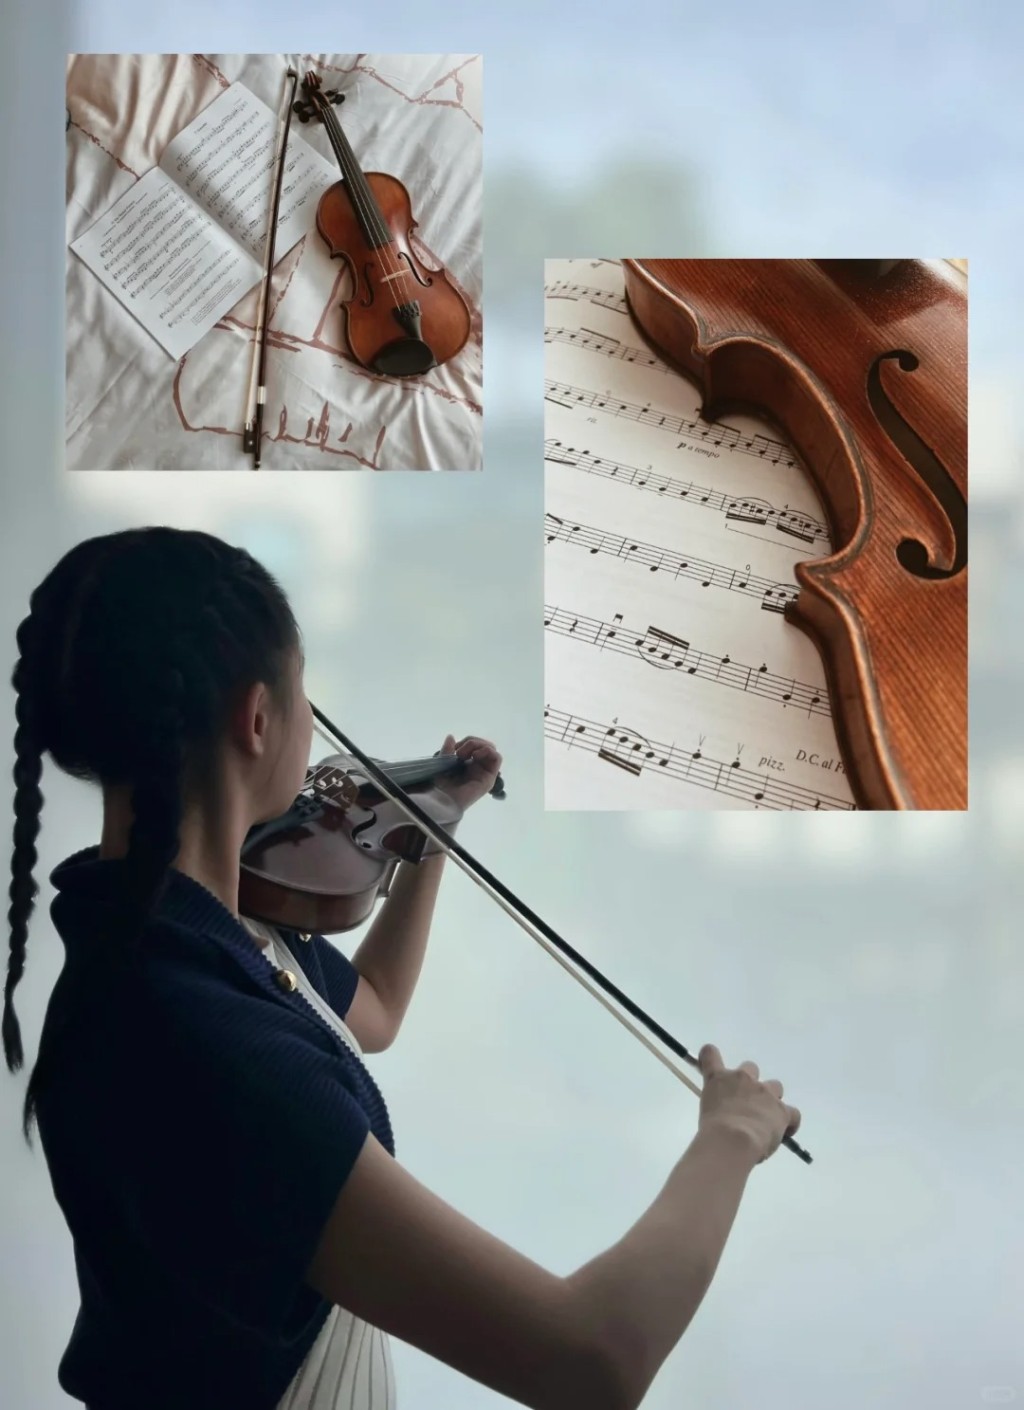 劉秀盈前日（18日），在社交網分享拉小提琴照片。